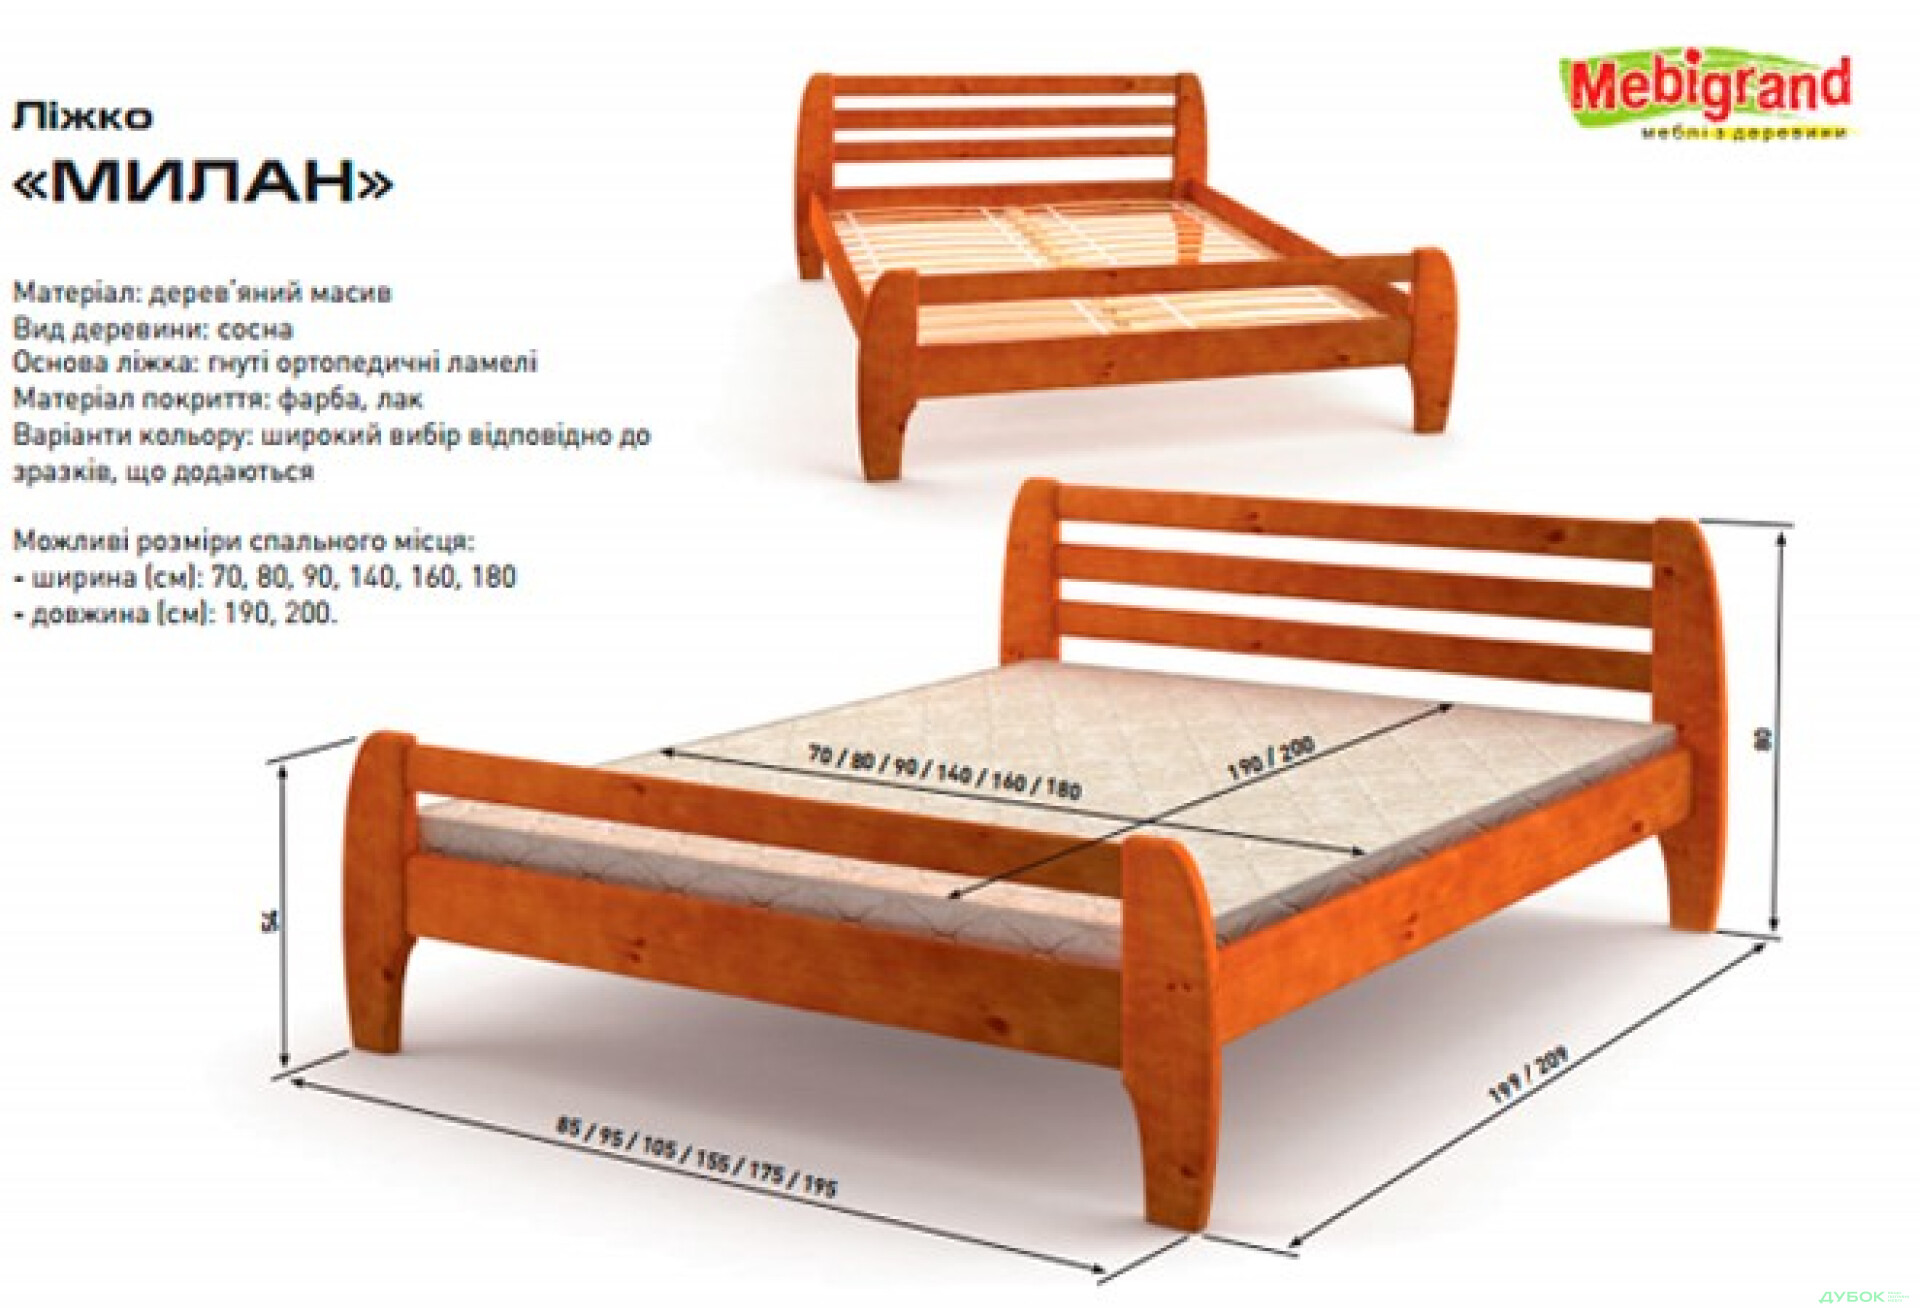 Фото 2 - Кровать двуспальная деревяная Милан 140 Mebigrand